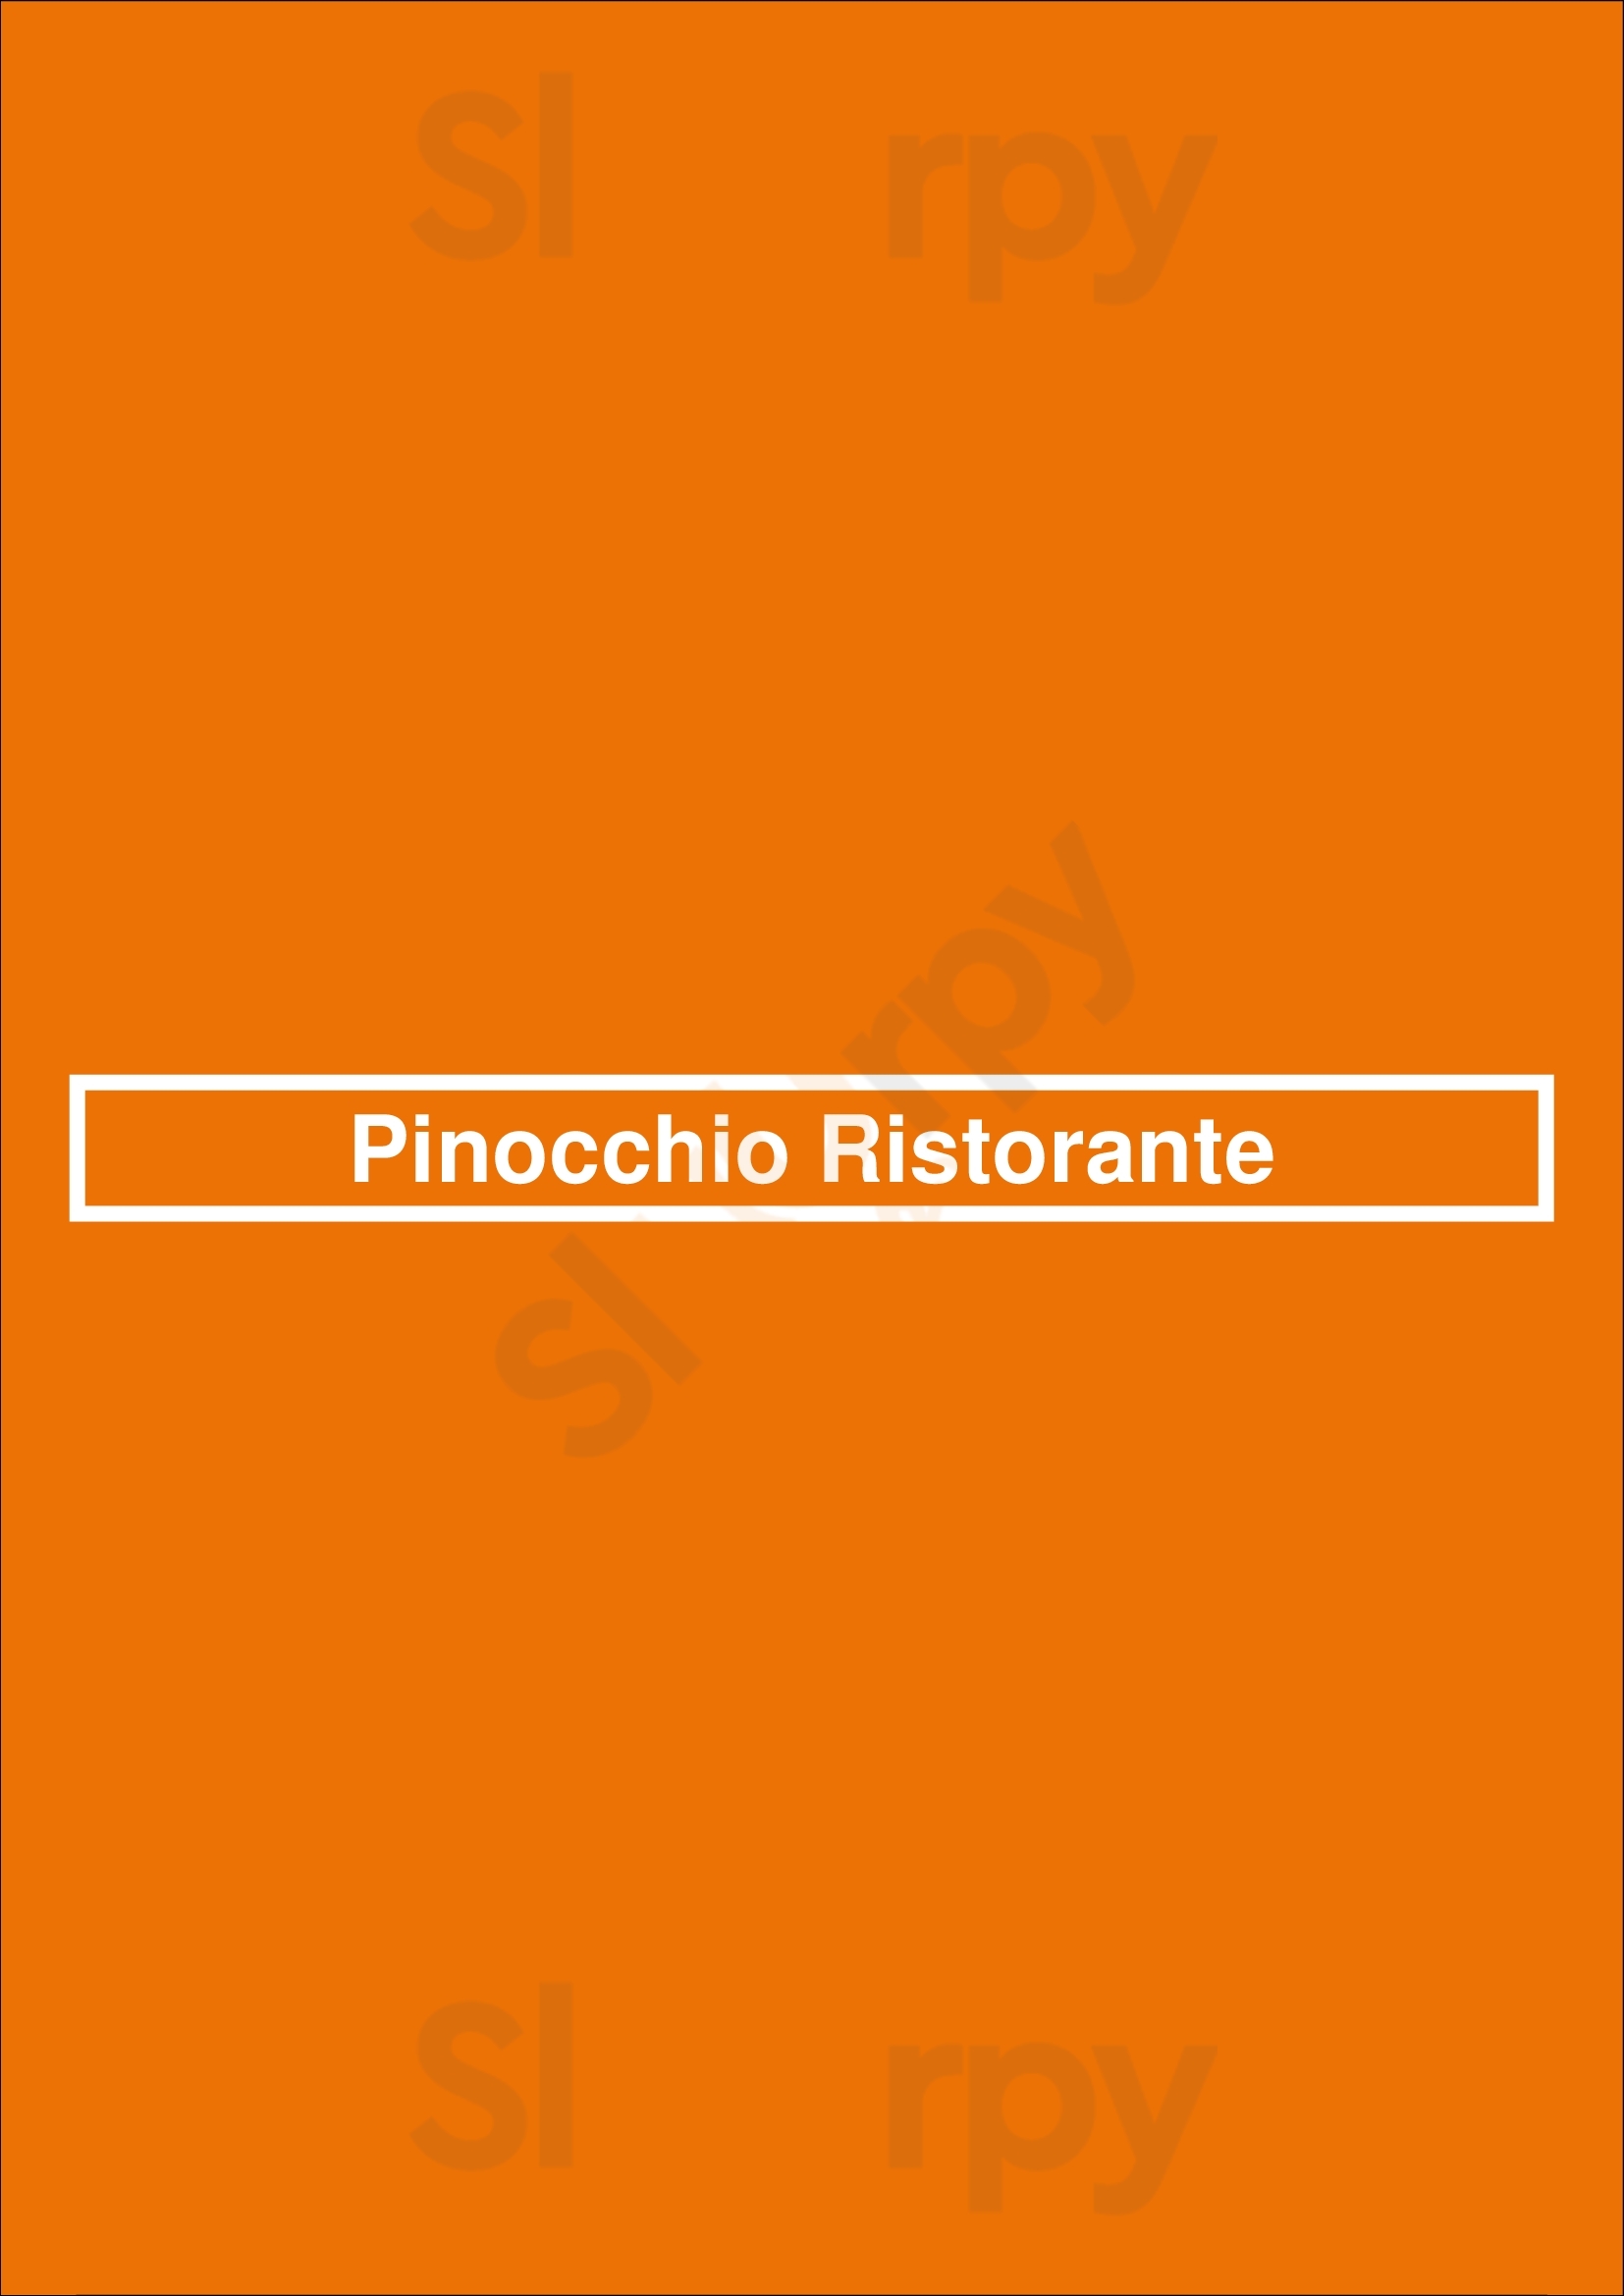 Pinocchio Ristorante New York City Menu - 1